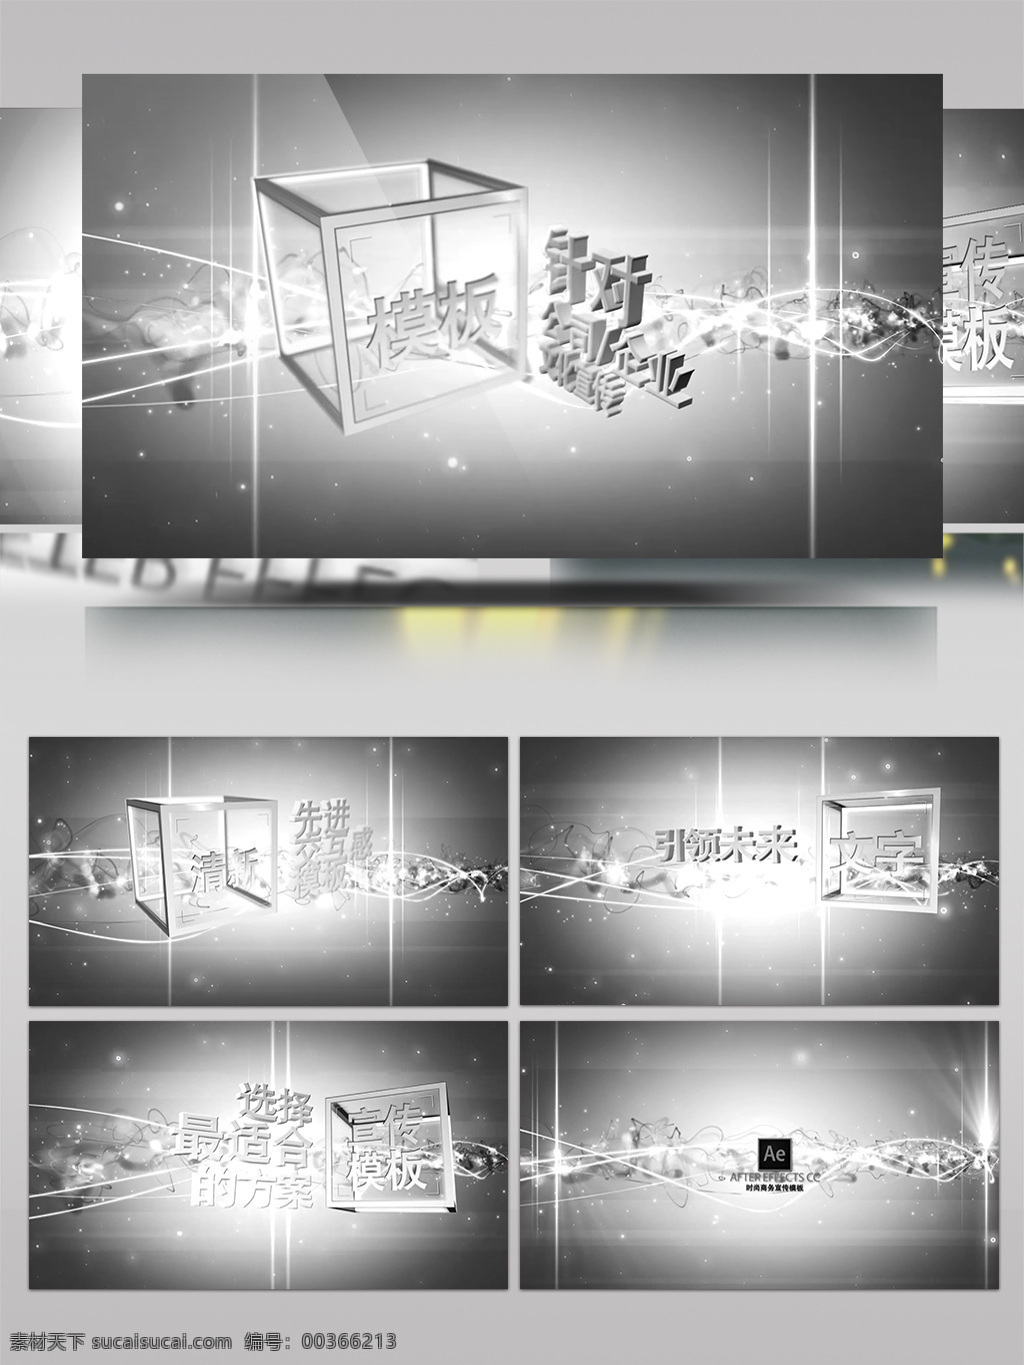 水晶 透明 质感 3d 盒子 文字 宣传 模板 水晶透明 质感3d 盒子文字 宣传模板